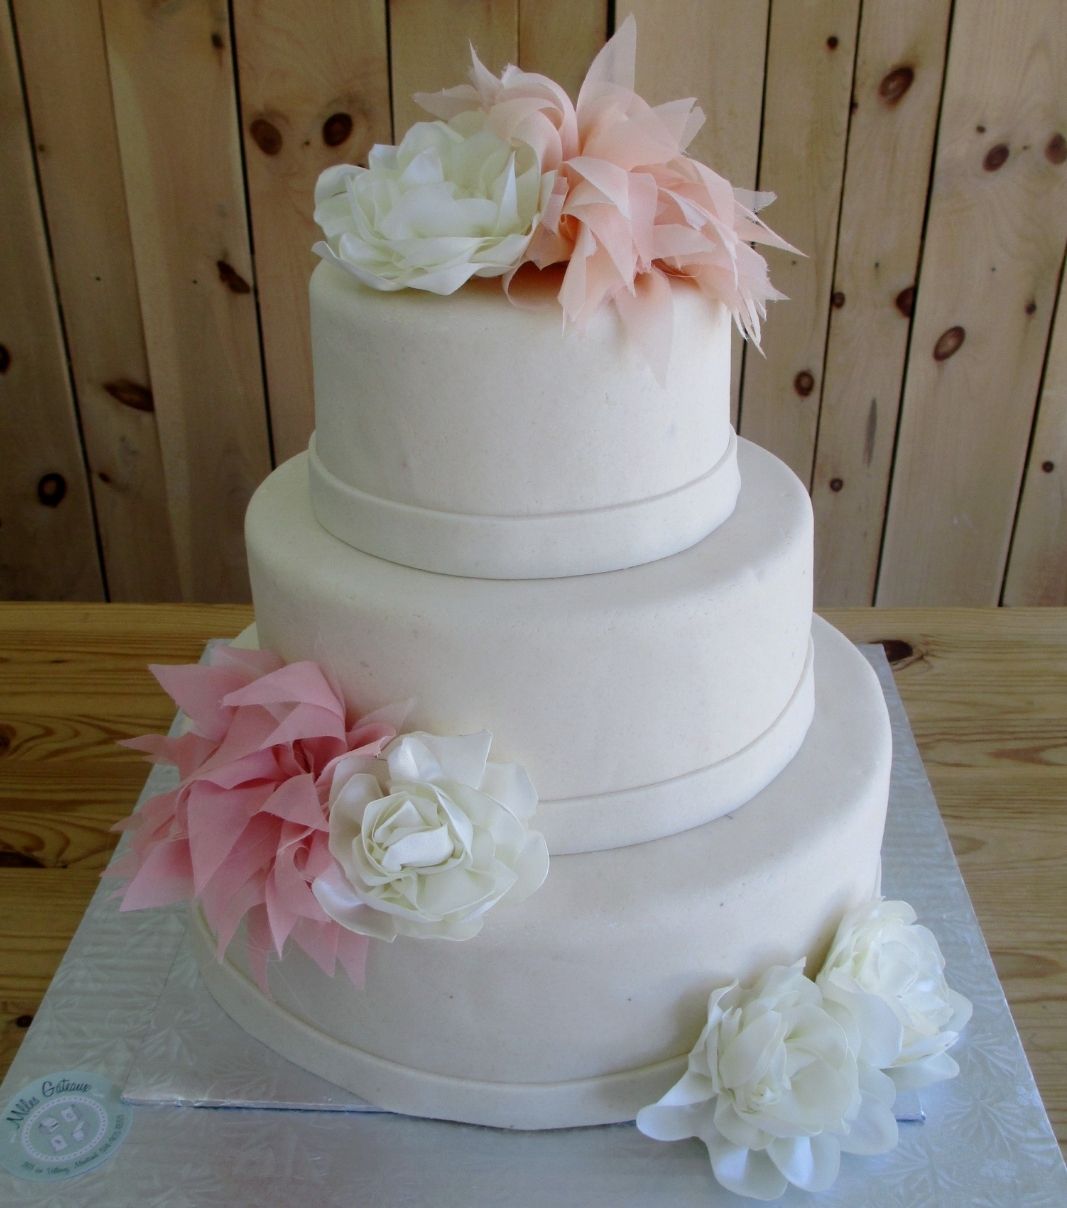 Gâteau de mariage d'Elisabeth et Dennis: gâteau de 3 étages avec une couverture en pâte d'amande naturelle et décoré de fleurs en tissus pastels.